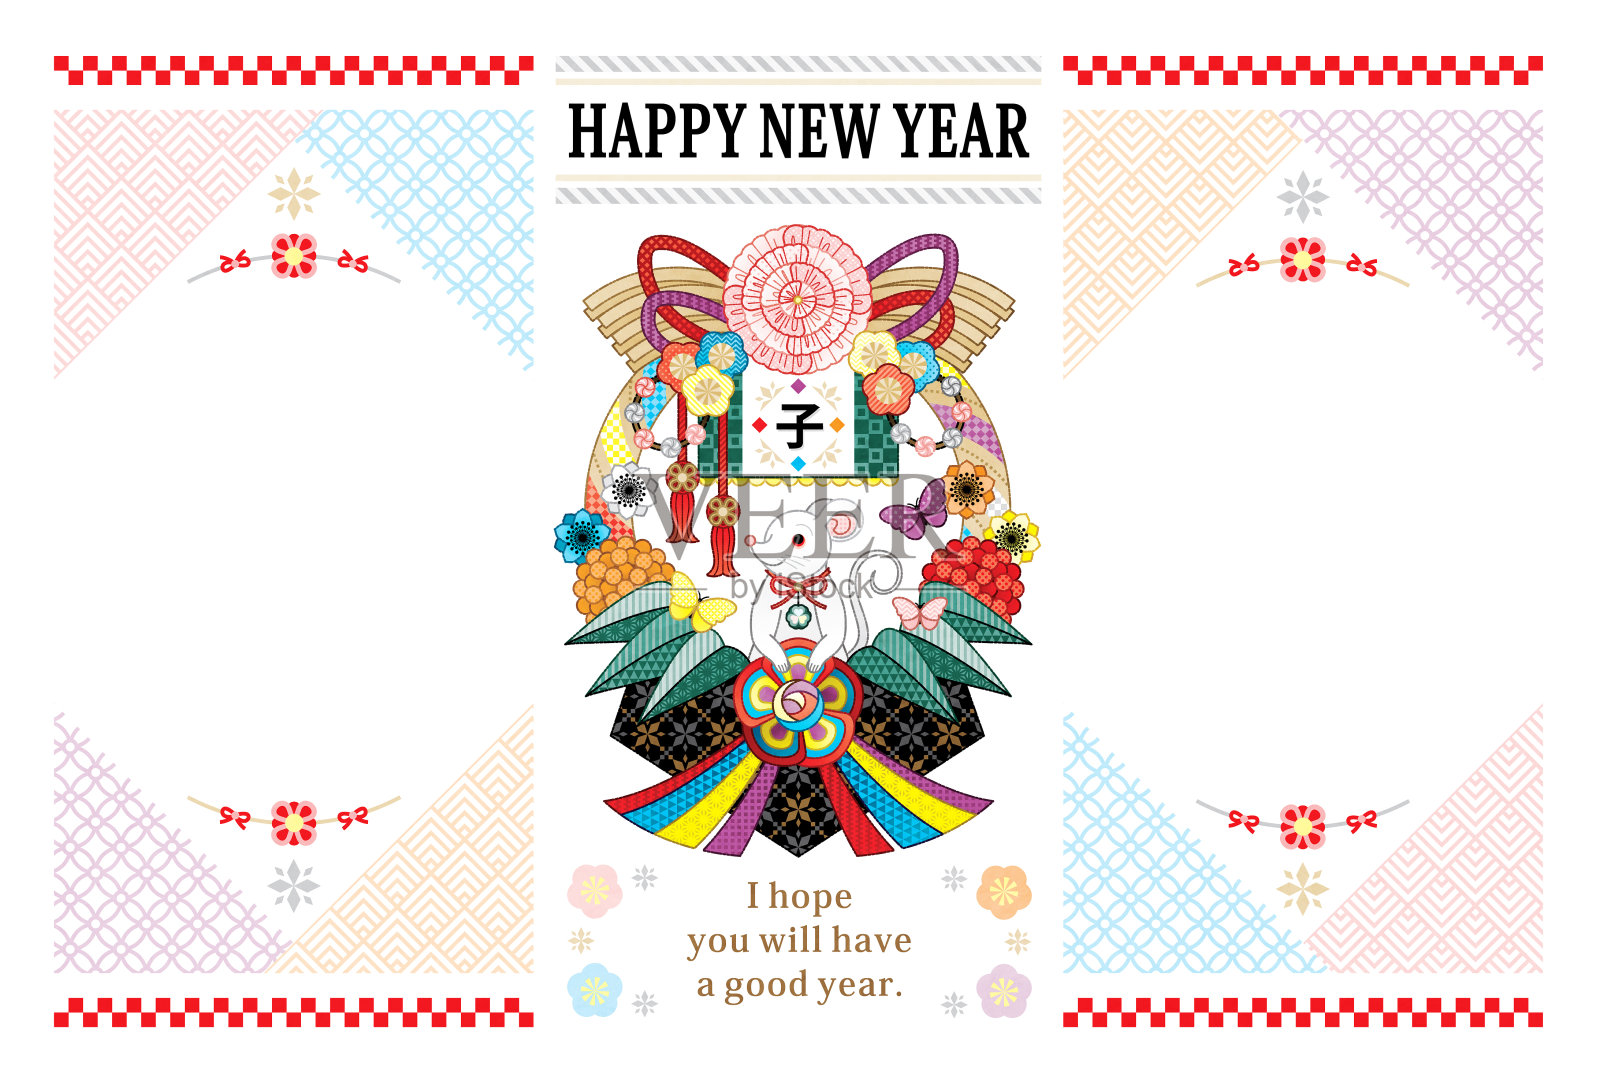 2020年新年贺年卡的鼠标年和日本装饰插图贺卡设计两帧设计模板素材